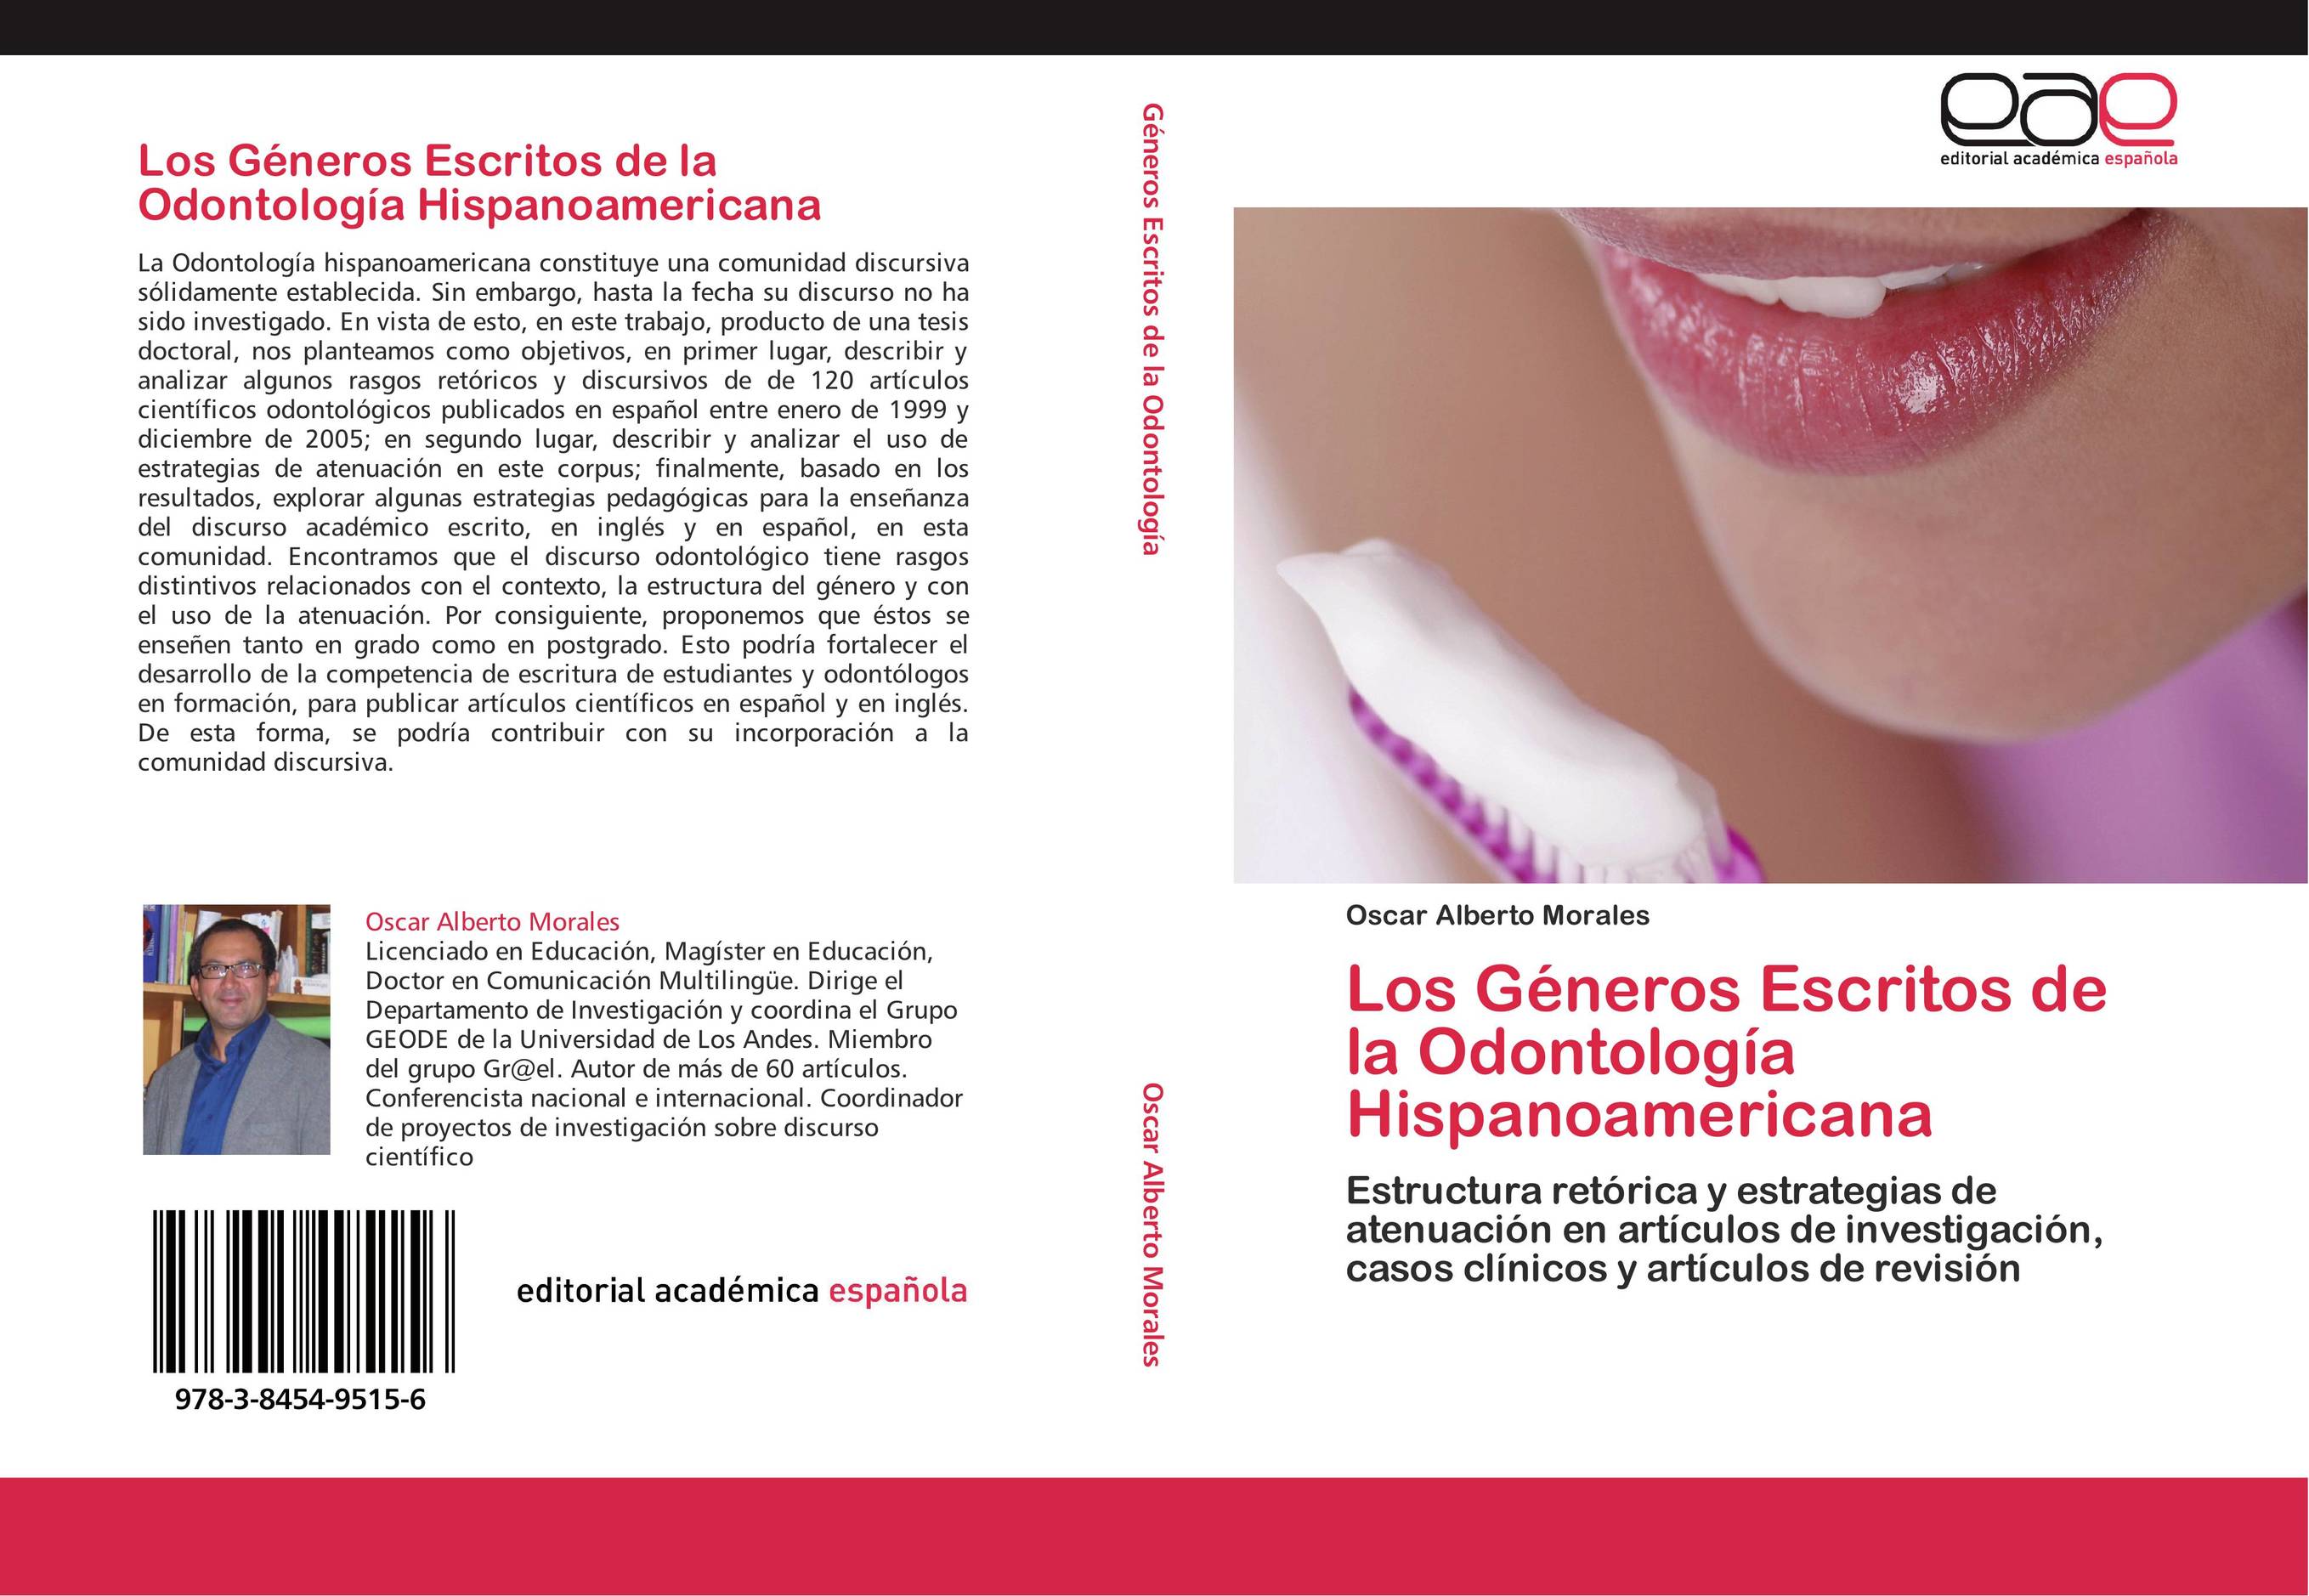 Los Géneros Escritos de la Odontología Hispanoamericana